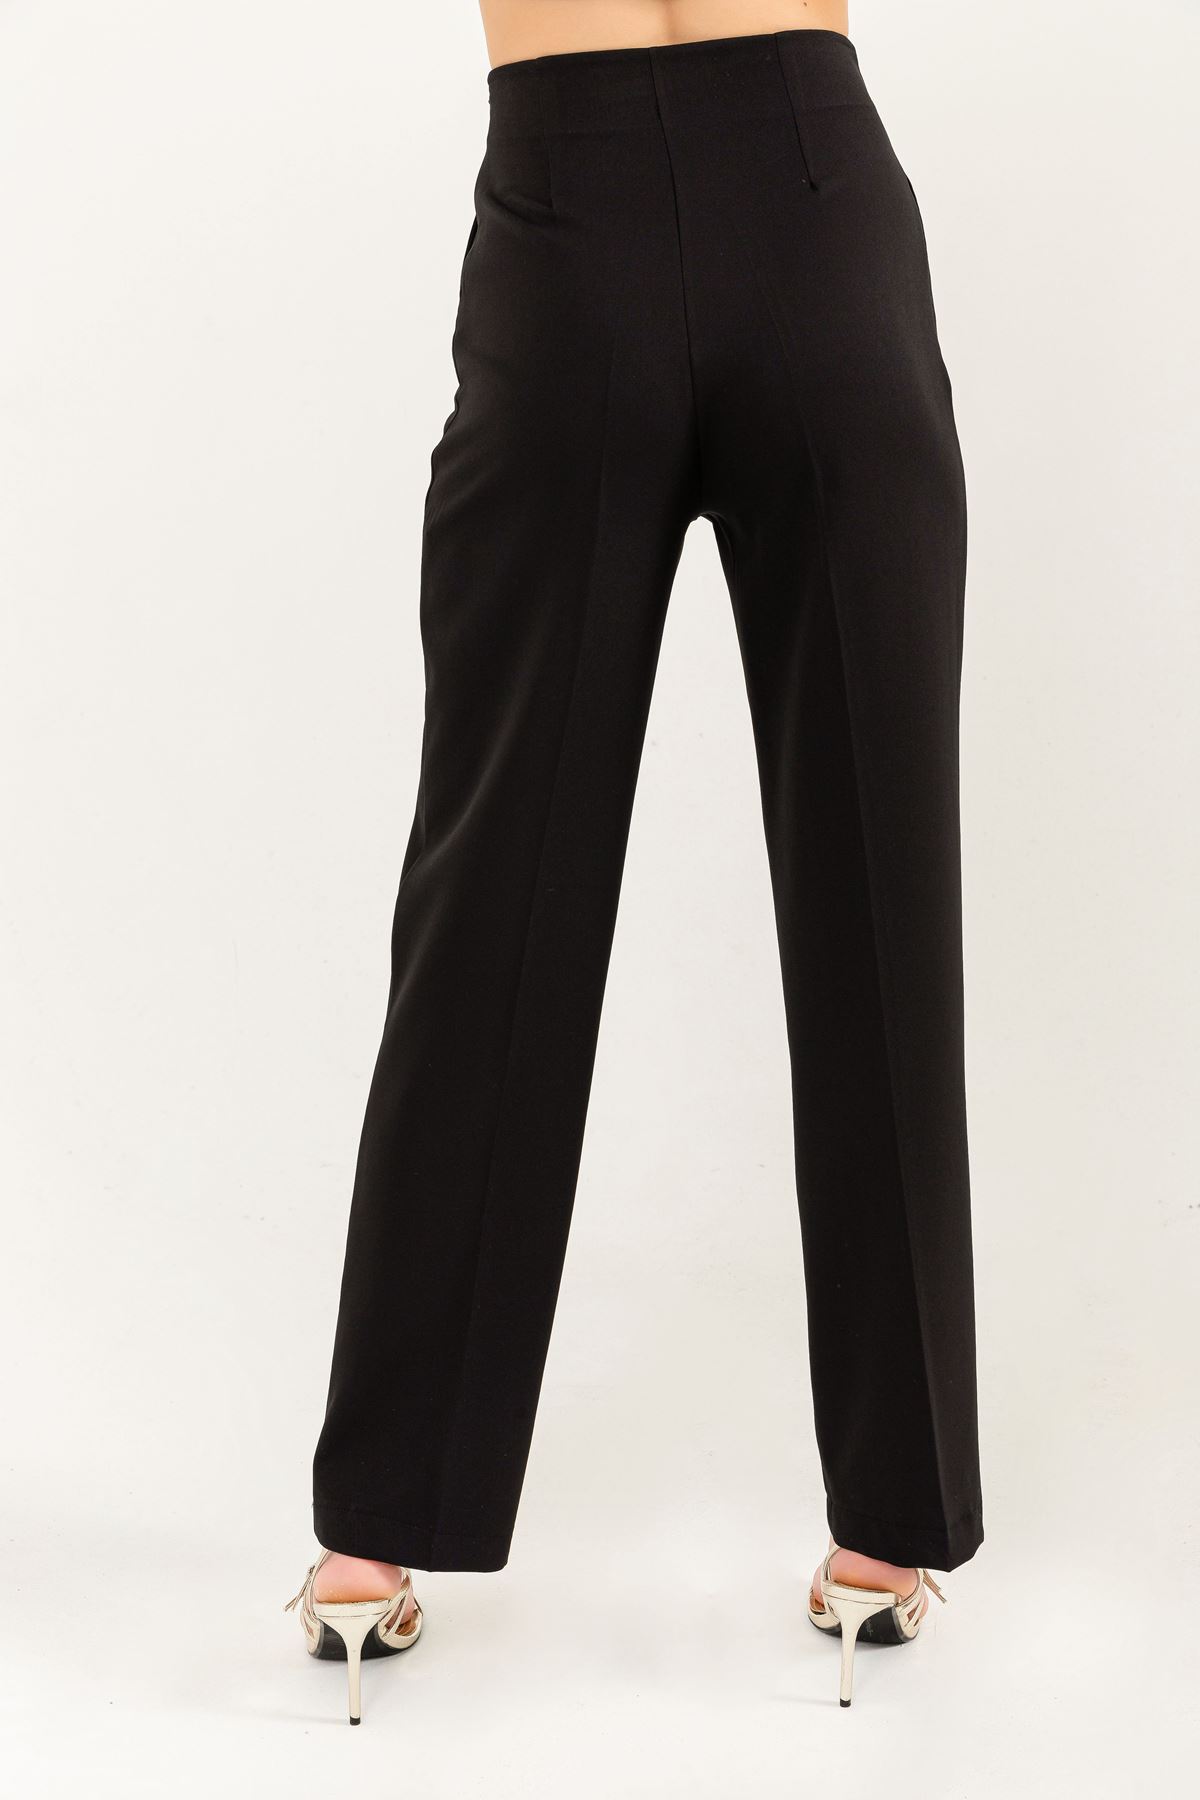 Atlas Kumaş Uzun Boy Bel Detaylı Klasik Kadın Pantolon-Siyah